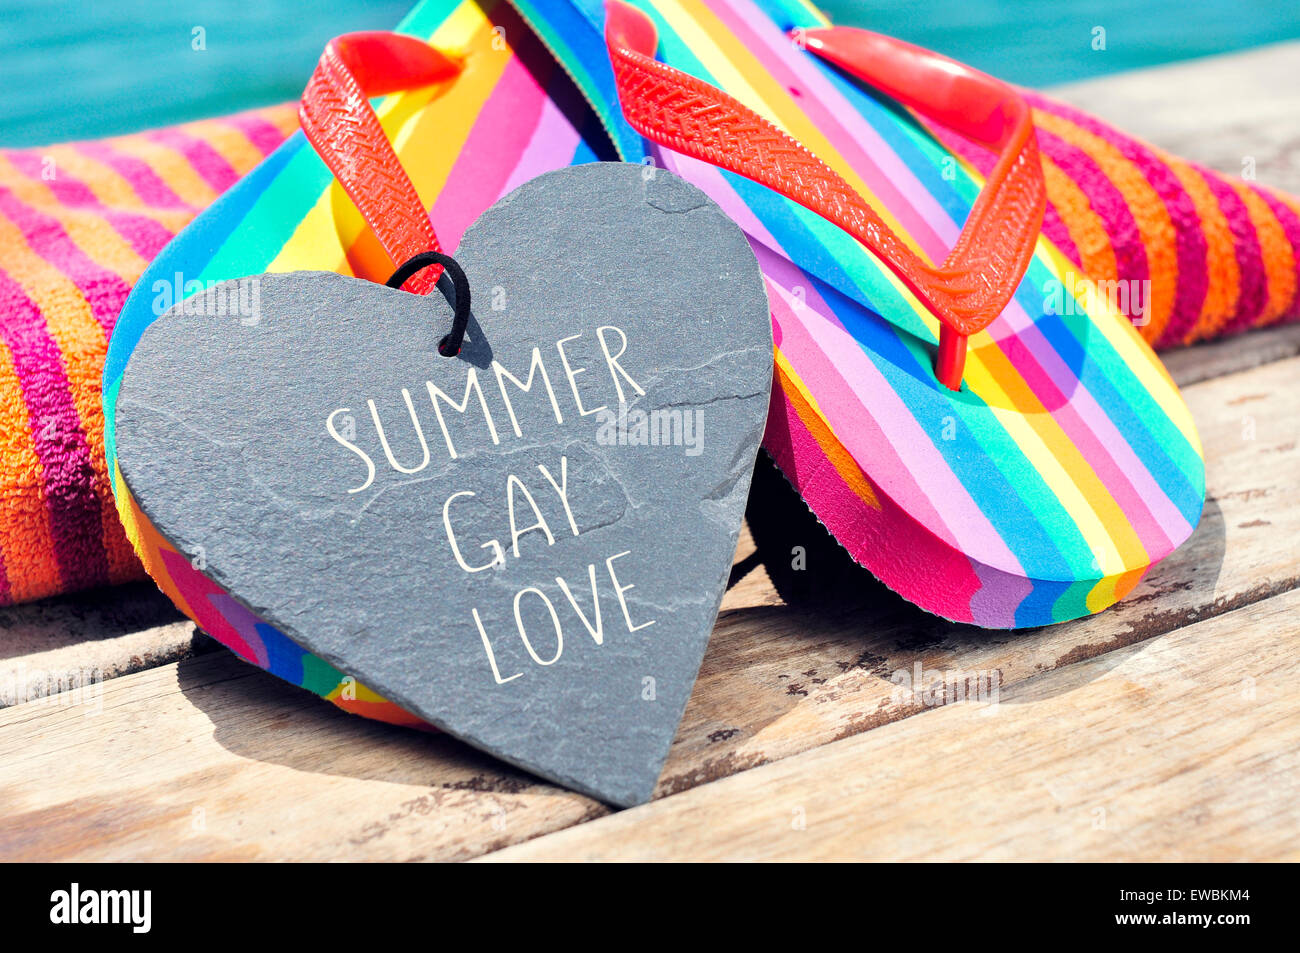 lieben Sie der Satz Sommer Homosexuell in einem herzförmigen Schiefer und ein paar Regenbogen Flip Flops und ein Strandtuch auf einem Brett geschrieben Stockfoto